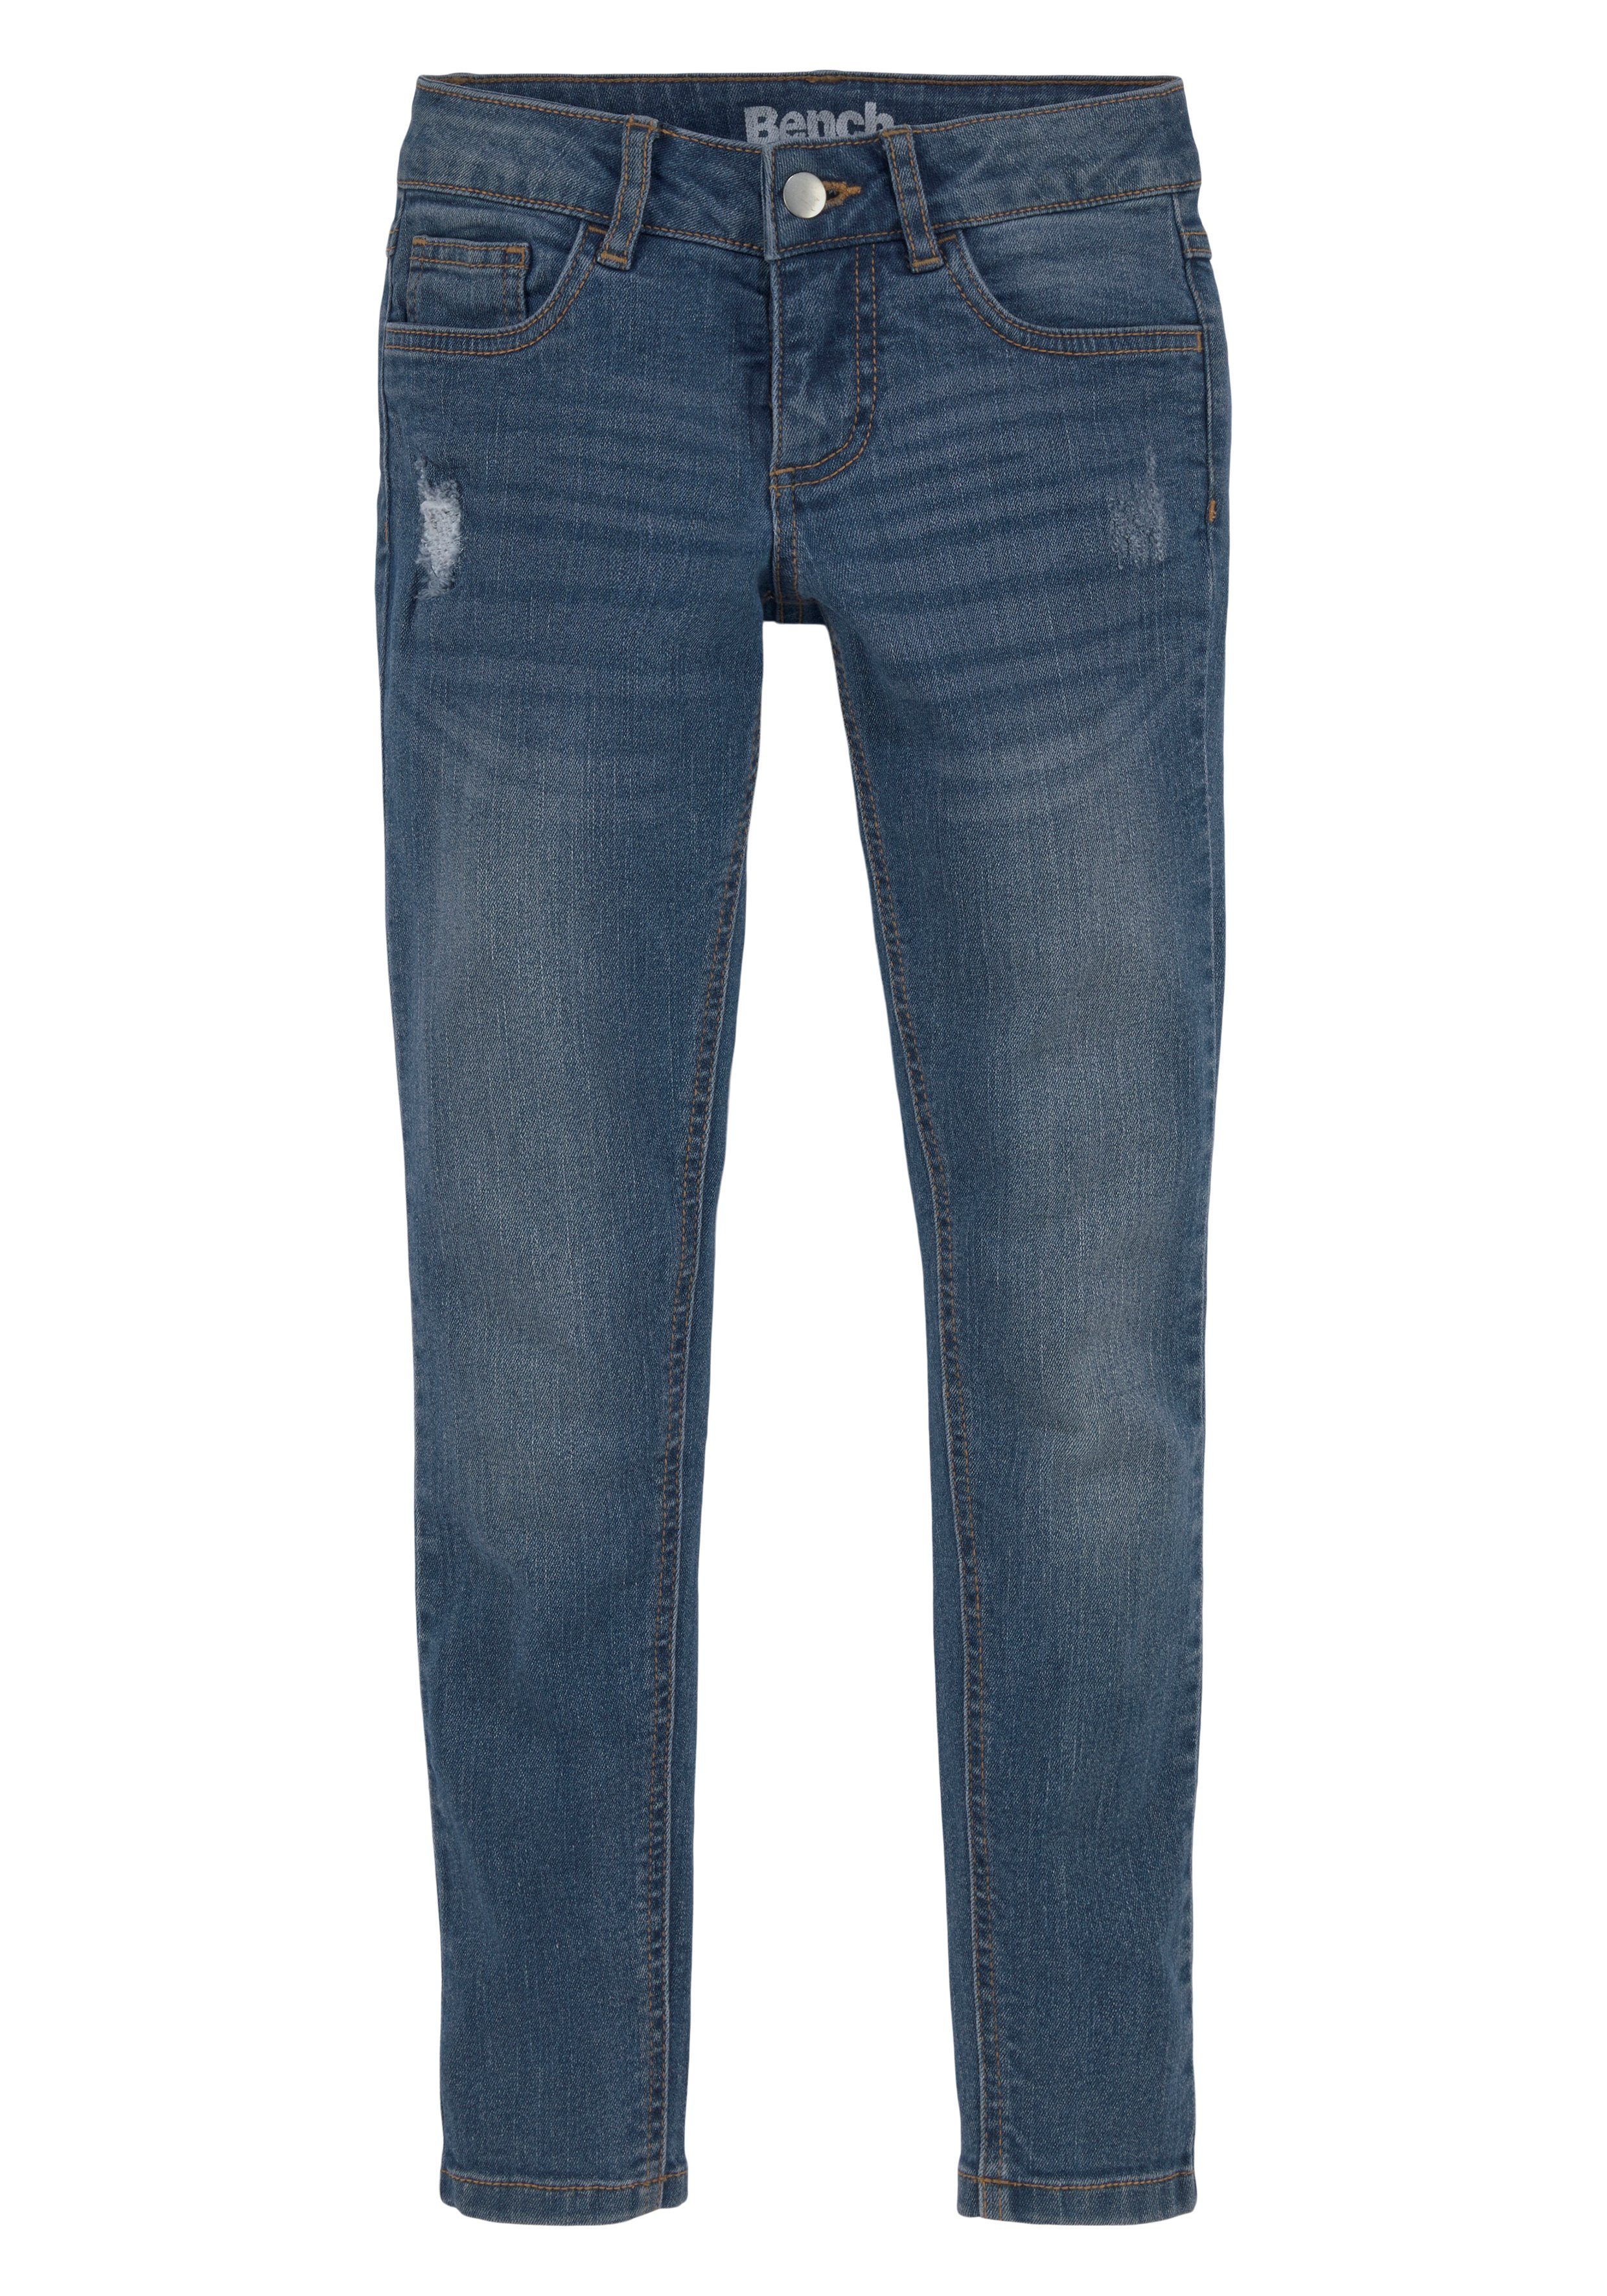 Stretch-Jeans Skinny Bench. in Abriebeffekten dezenten mit Super